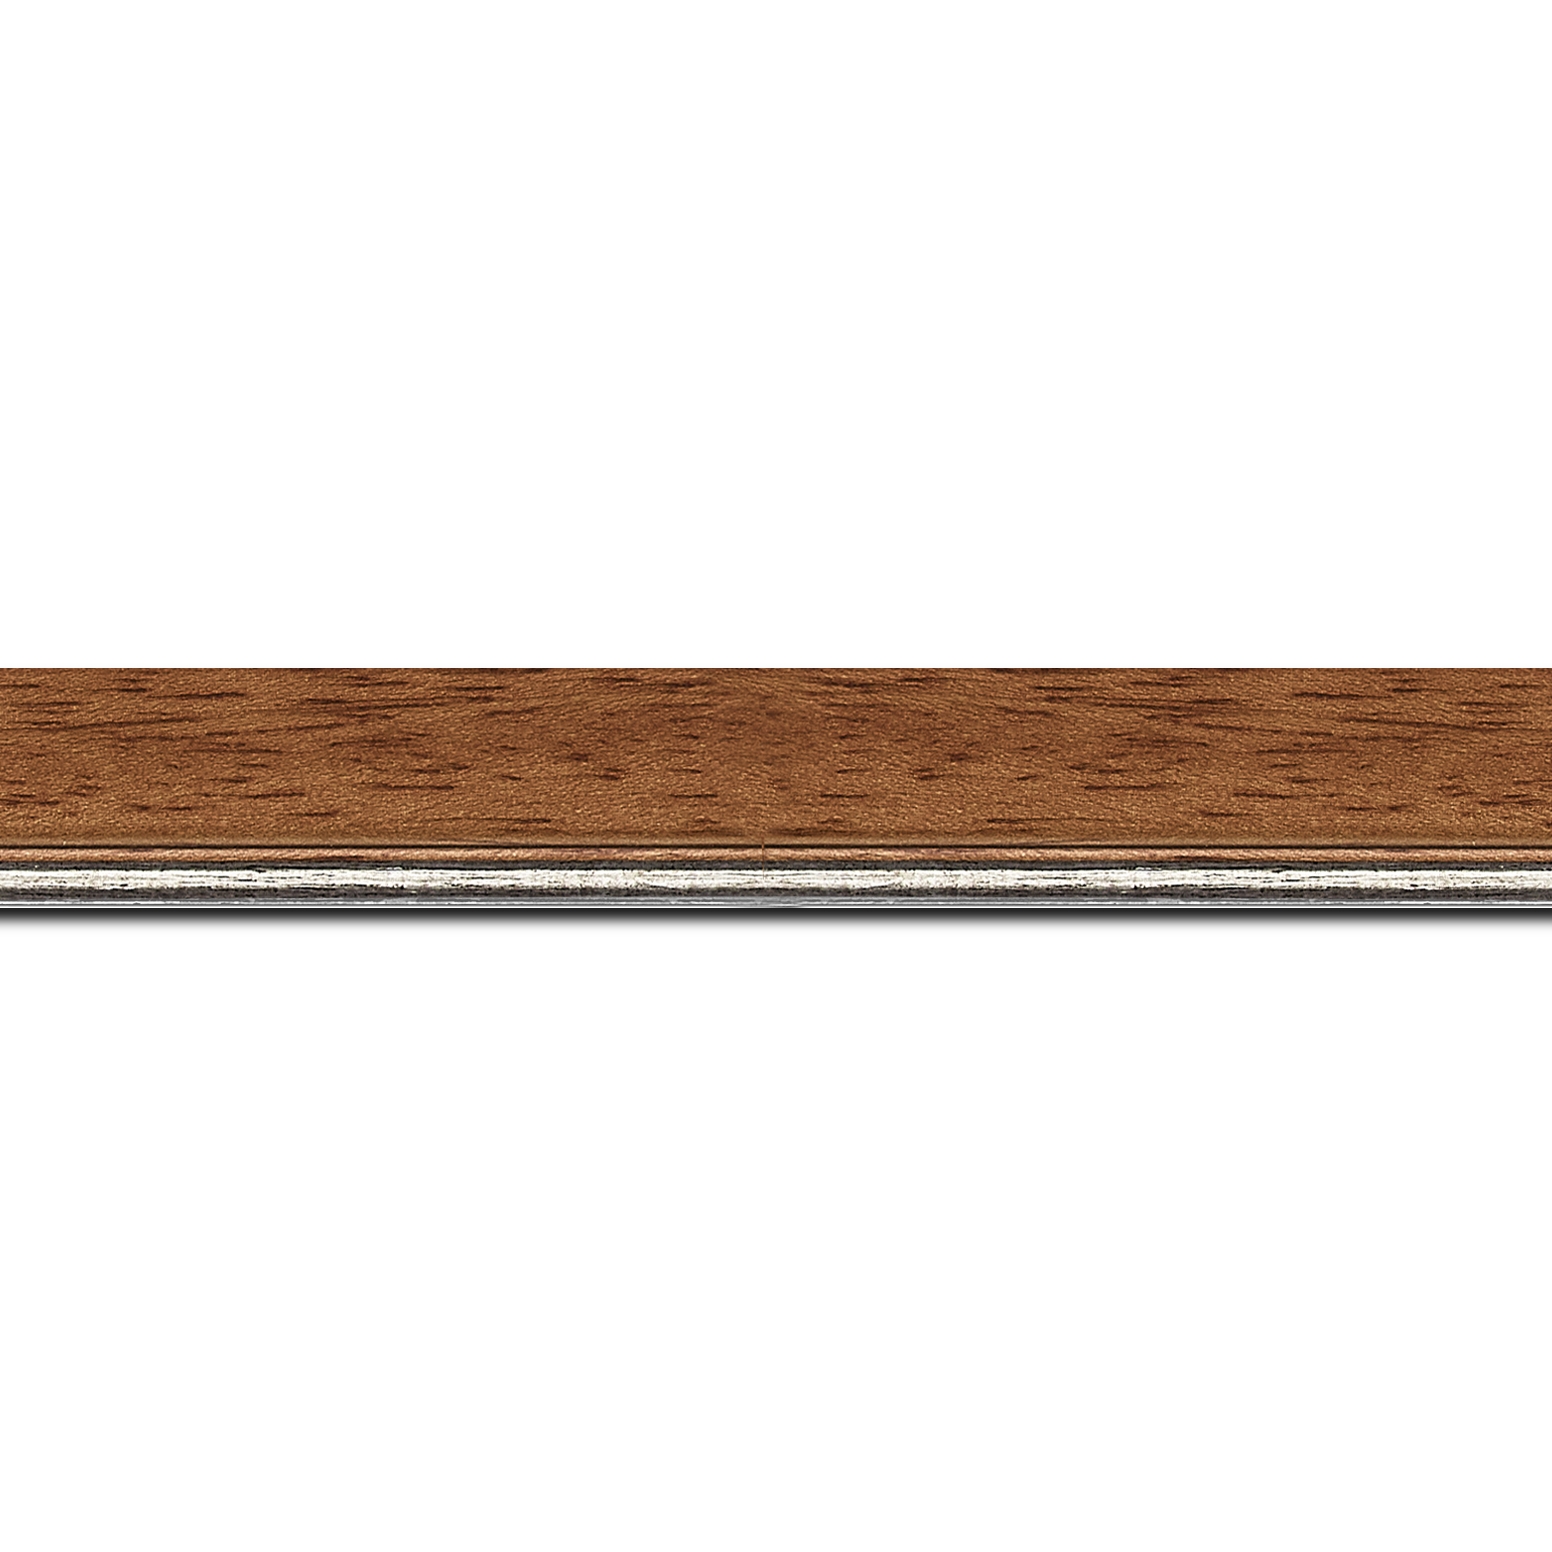 Pack par 12m, bois profil plat largeur 2.5cm couleur marron ton bois filet argent (longueur baguette pouvant varier entre 2.40m et 3m selon arrivage des bois)